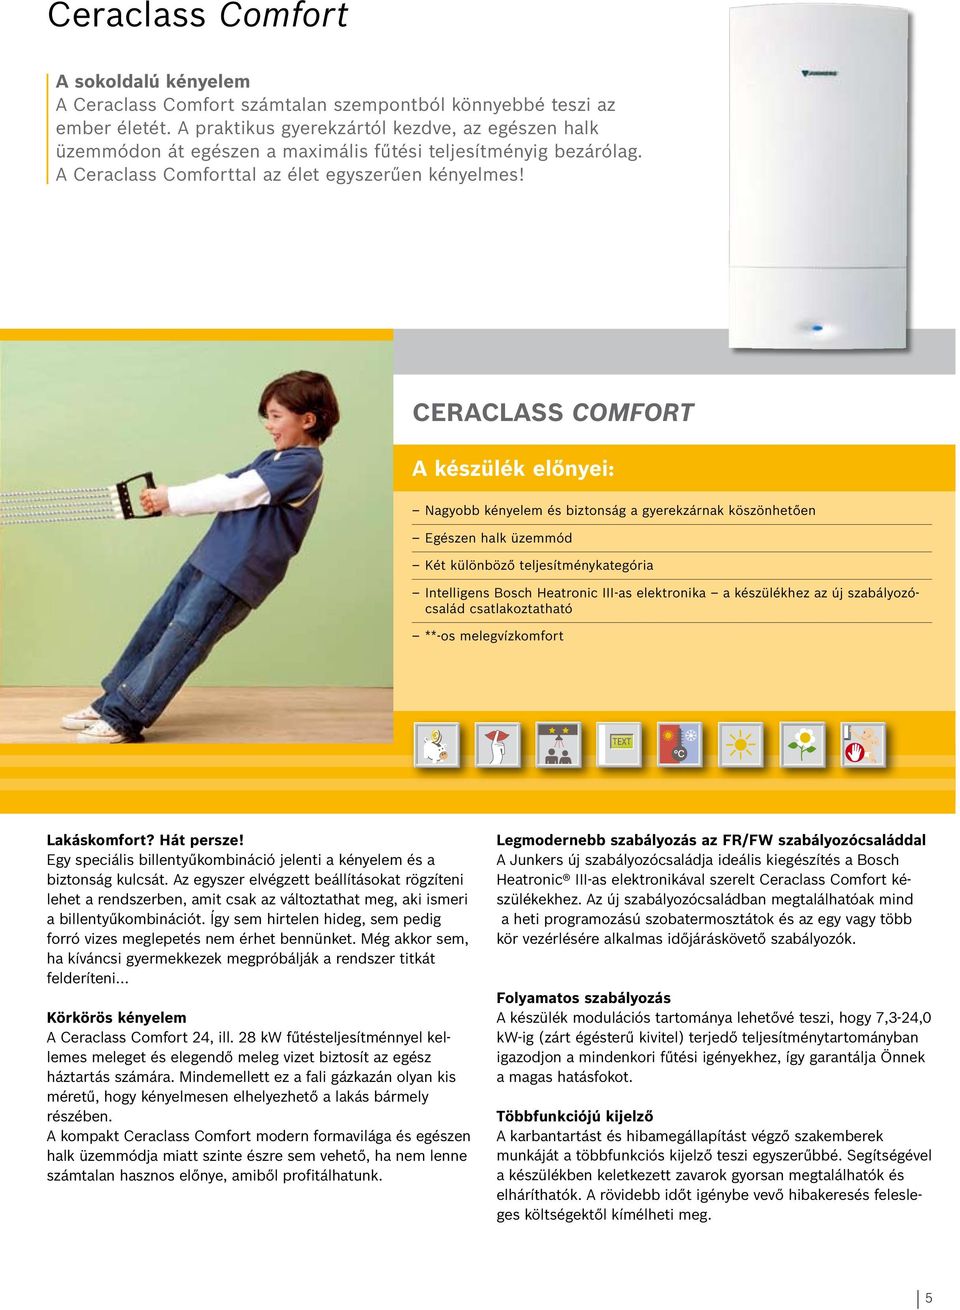 Ceraclass Comfort A készülék előnyei: Nagyobb kényelem és biztonság a gyerekzárnak köszönhetően Egészen halk üzemmód Két különböző teljesítménykategória Intelligens Bosch Heatronic III-as elektronika